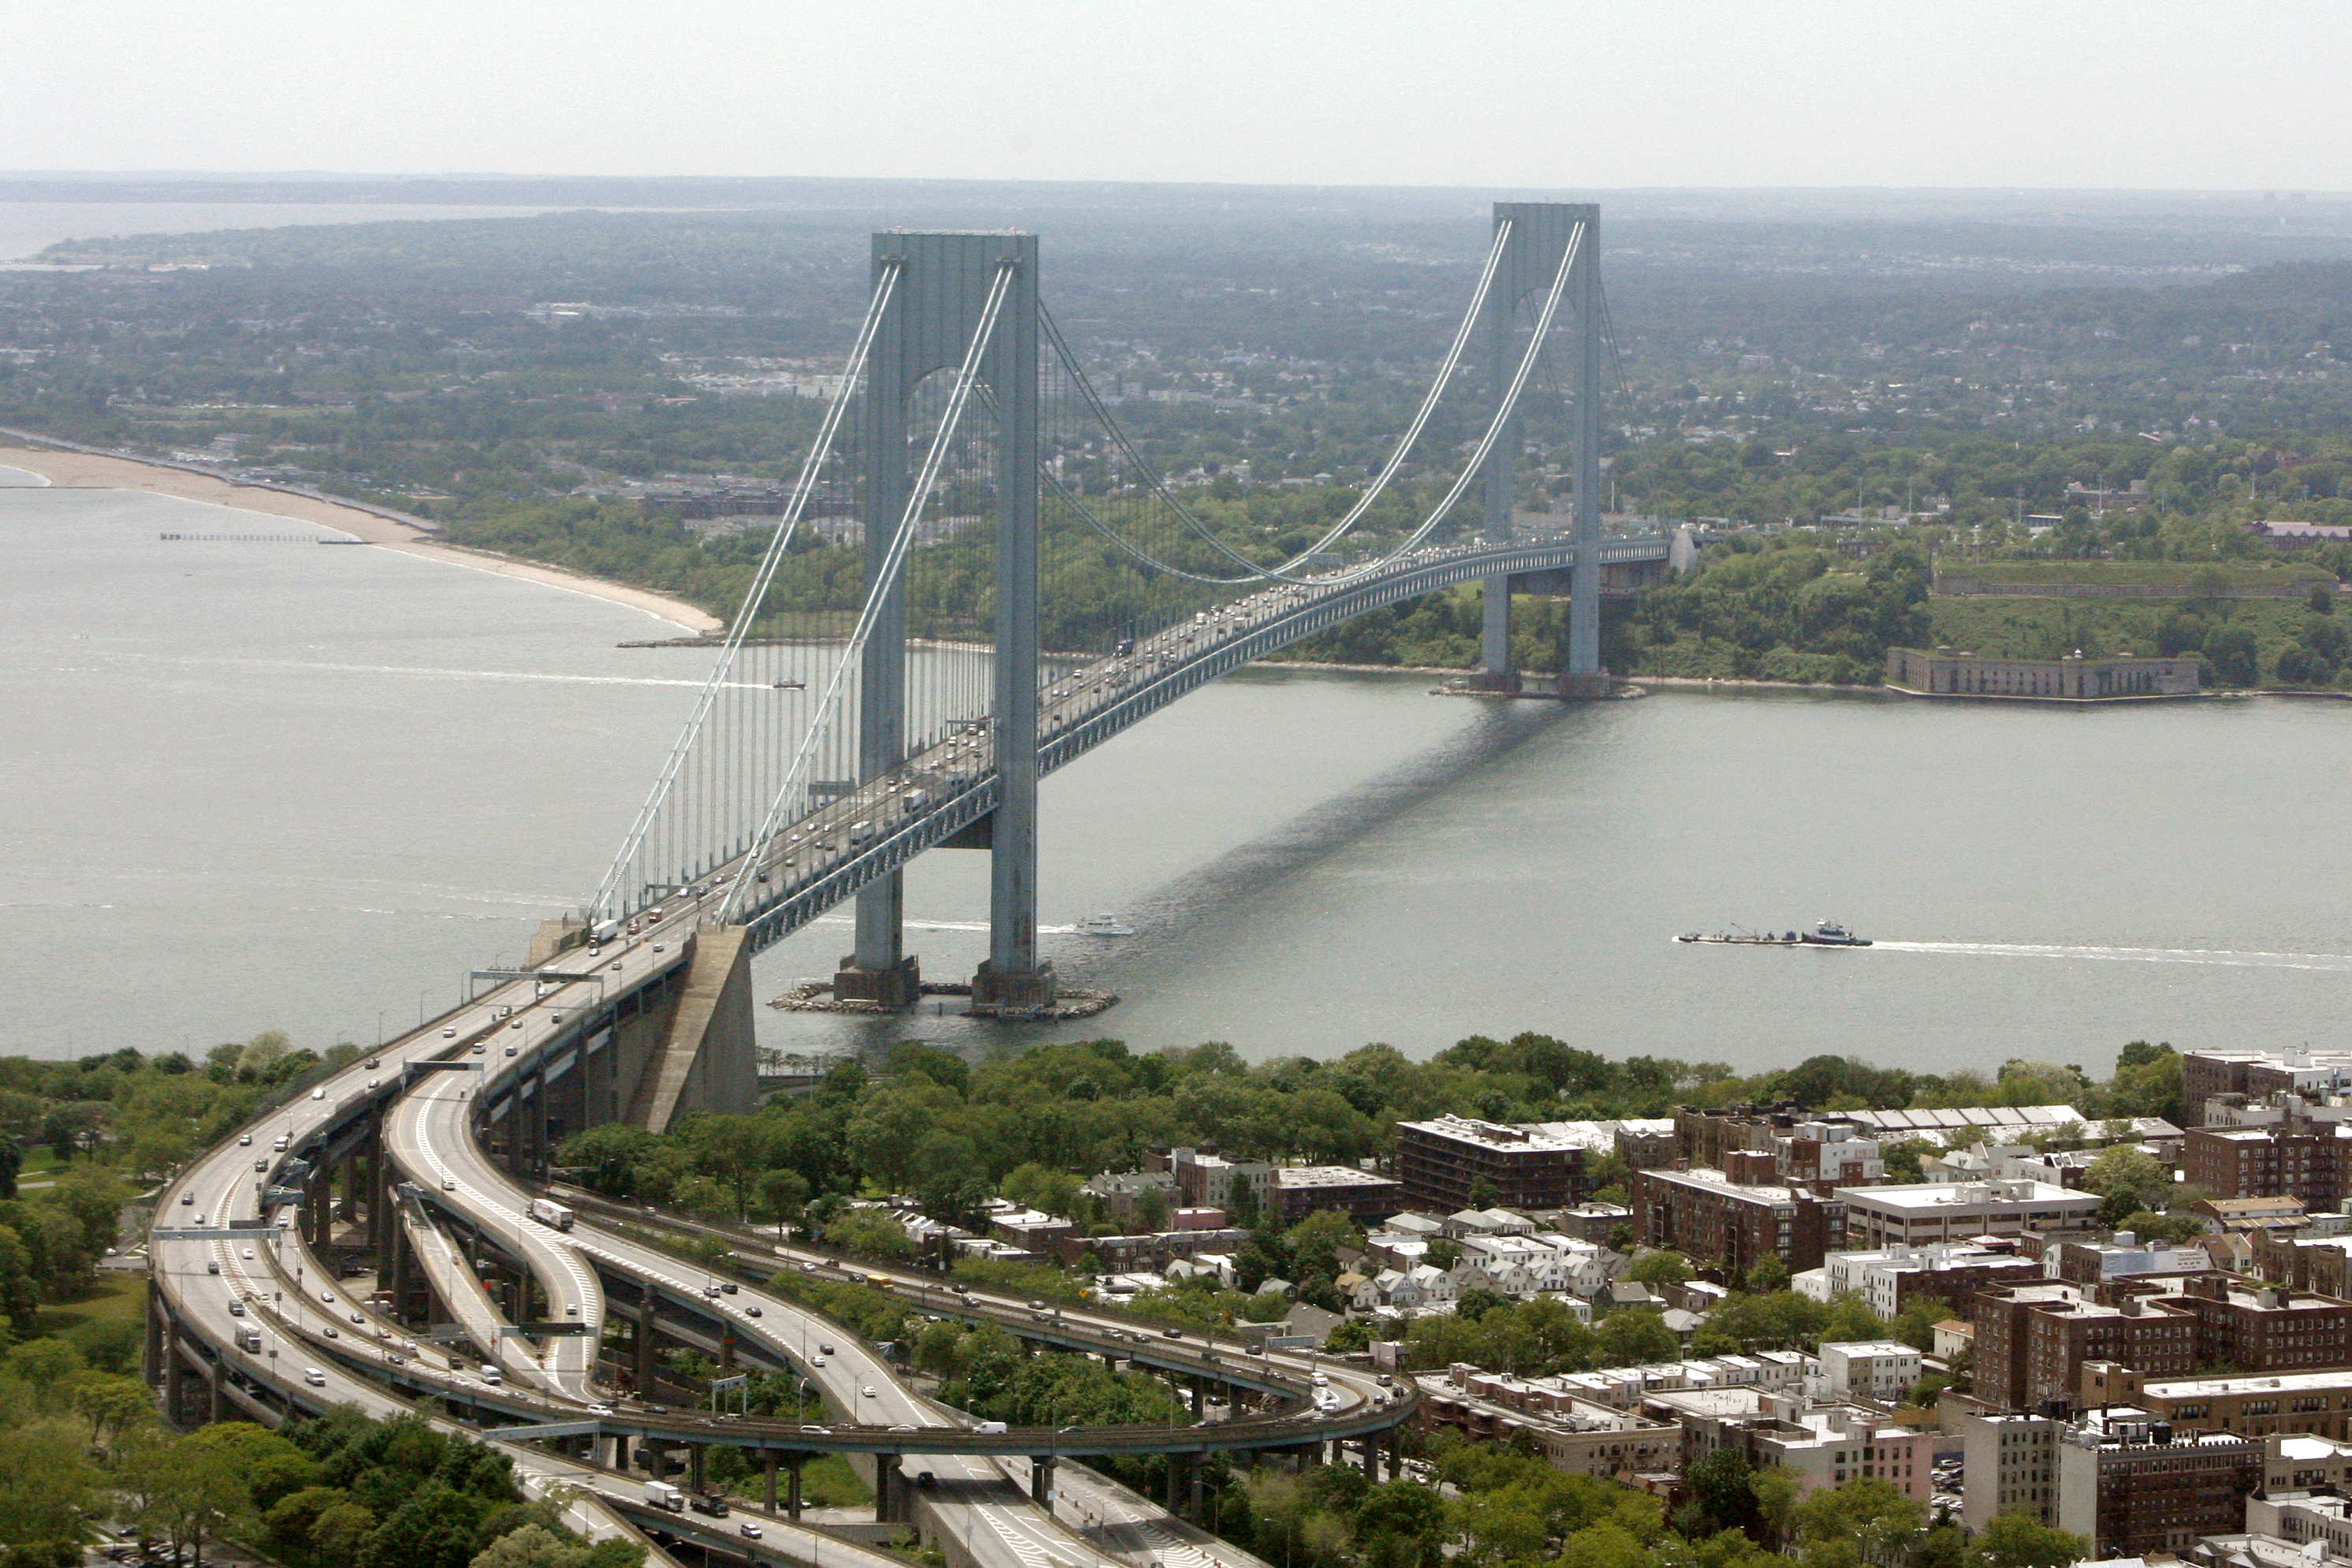 Мост Верразано Статен-Айленд